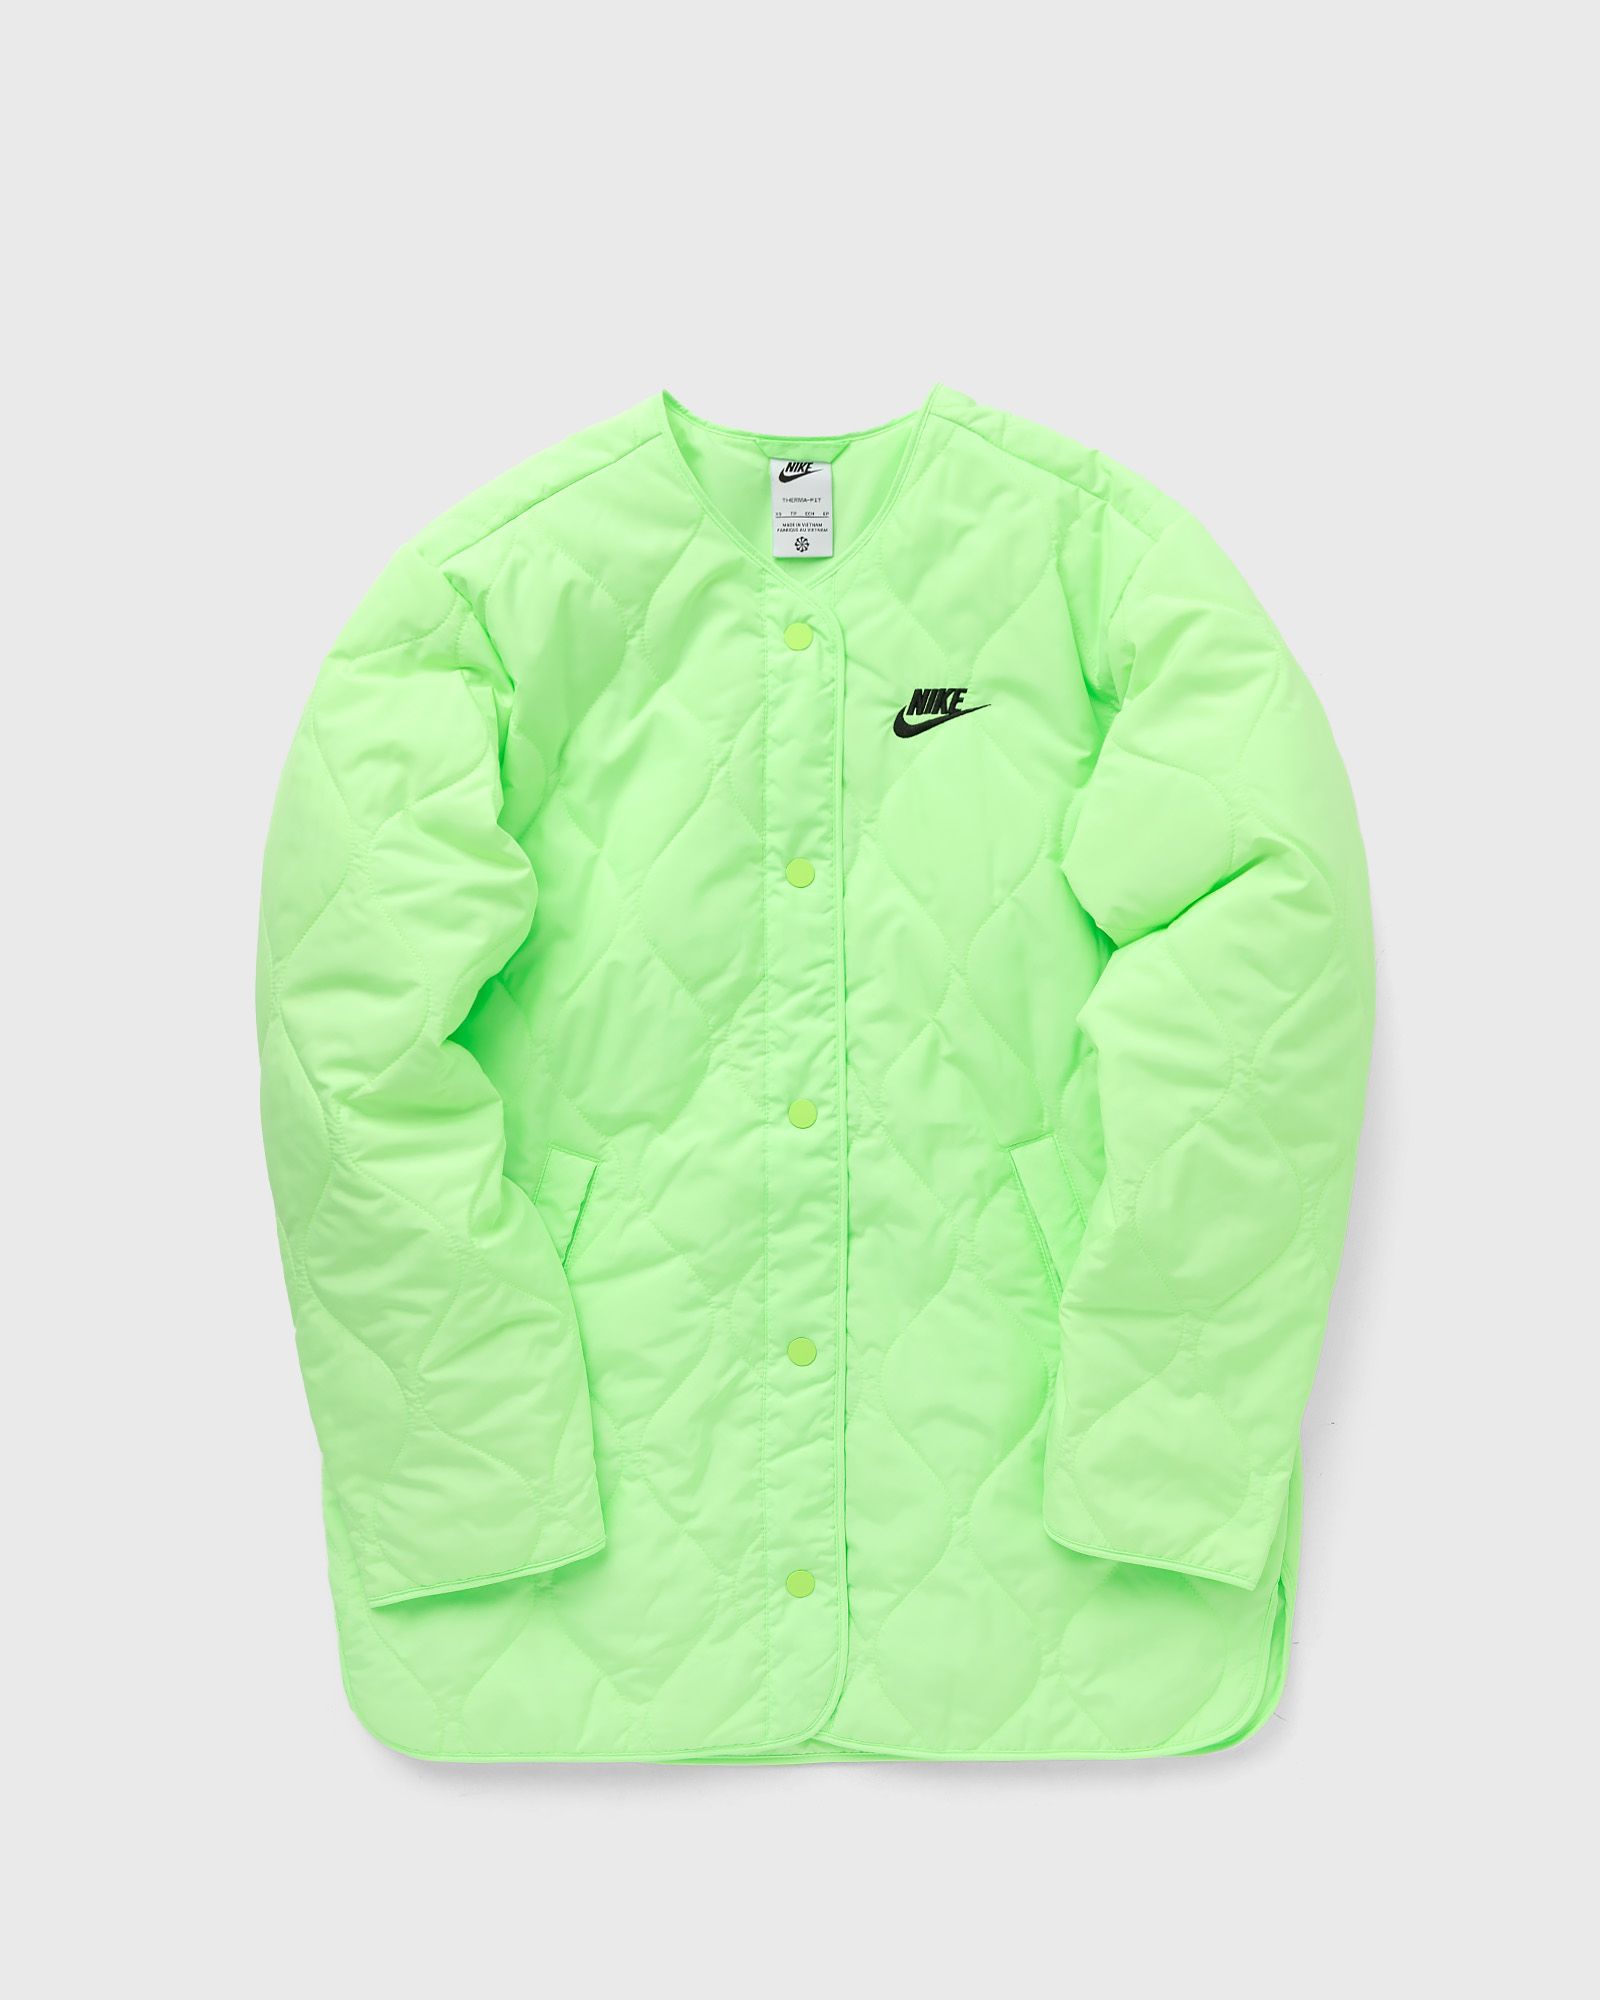 Nike - sportswear women's sports utility jacket women windbreaker green in größe:xs